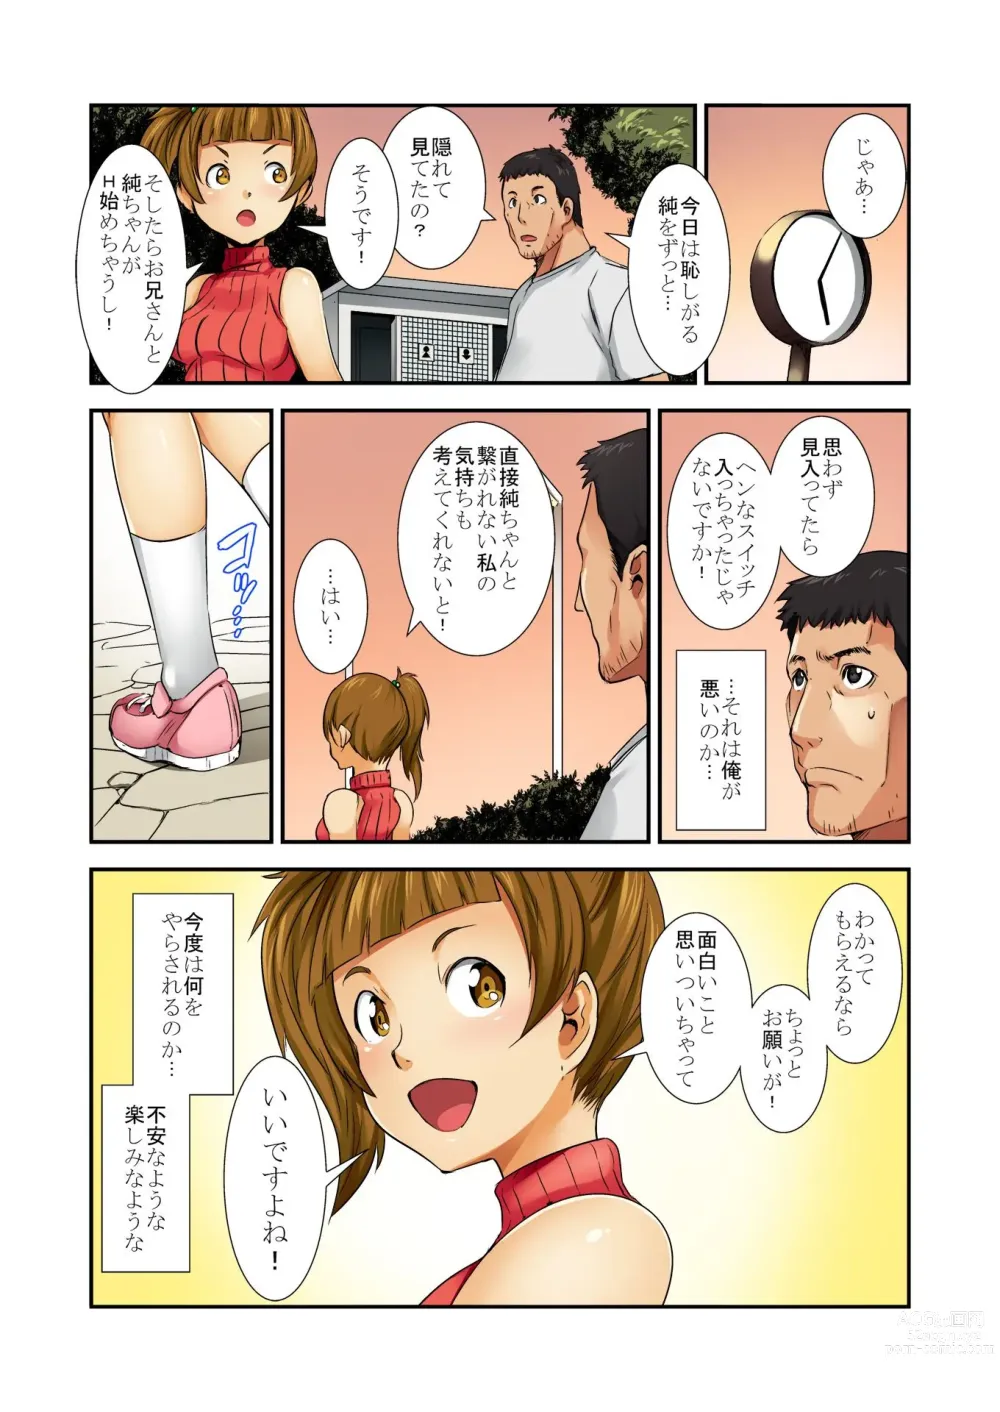 Page 51 of manga Otona wa omocha 〜 kinjo no onnanoko ga ero sugiru!〜